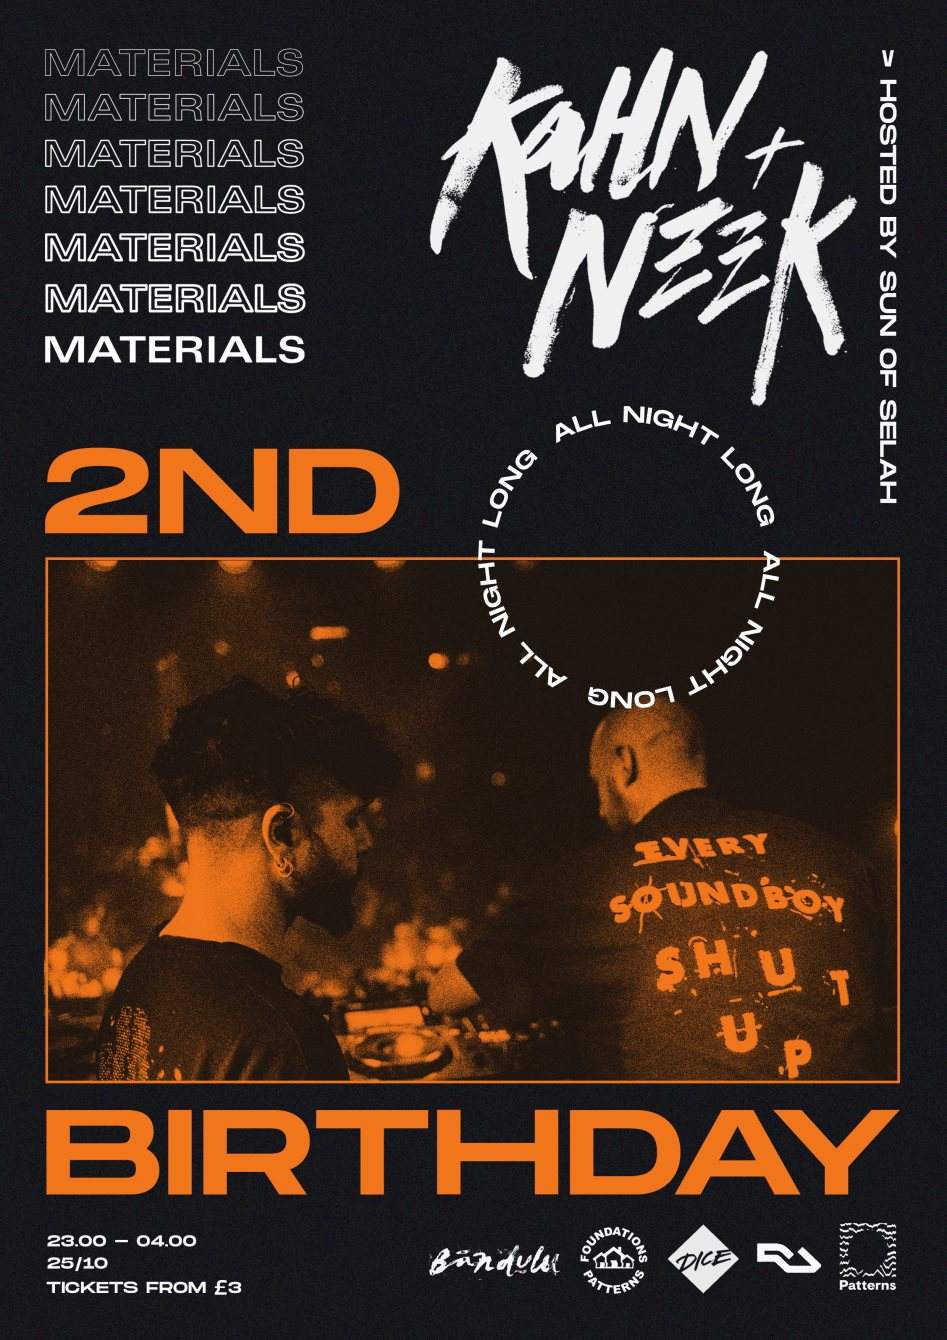 MATERIALS 2nd Birthday: Kahn + Neek (All Night Long) - Página frontal